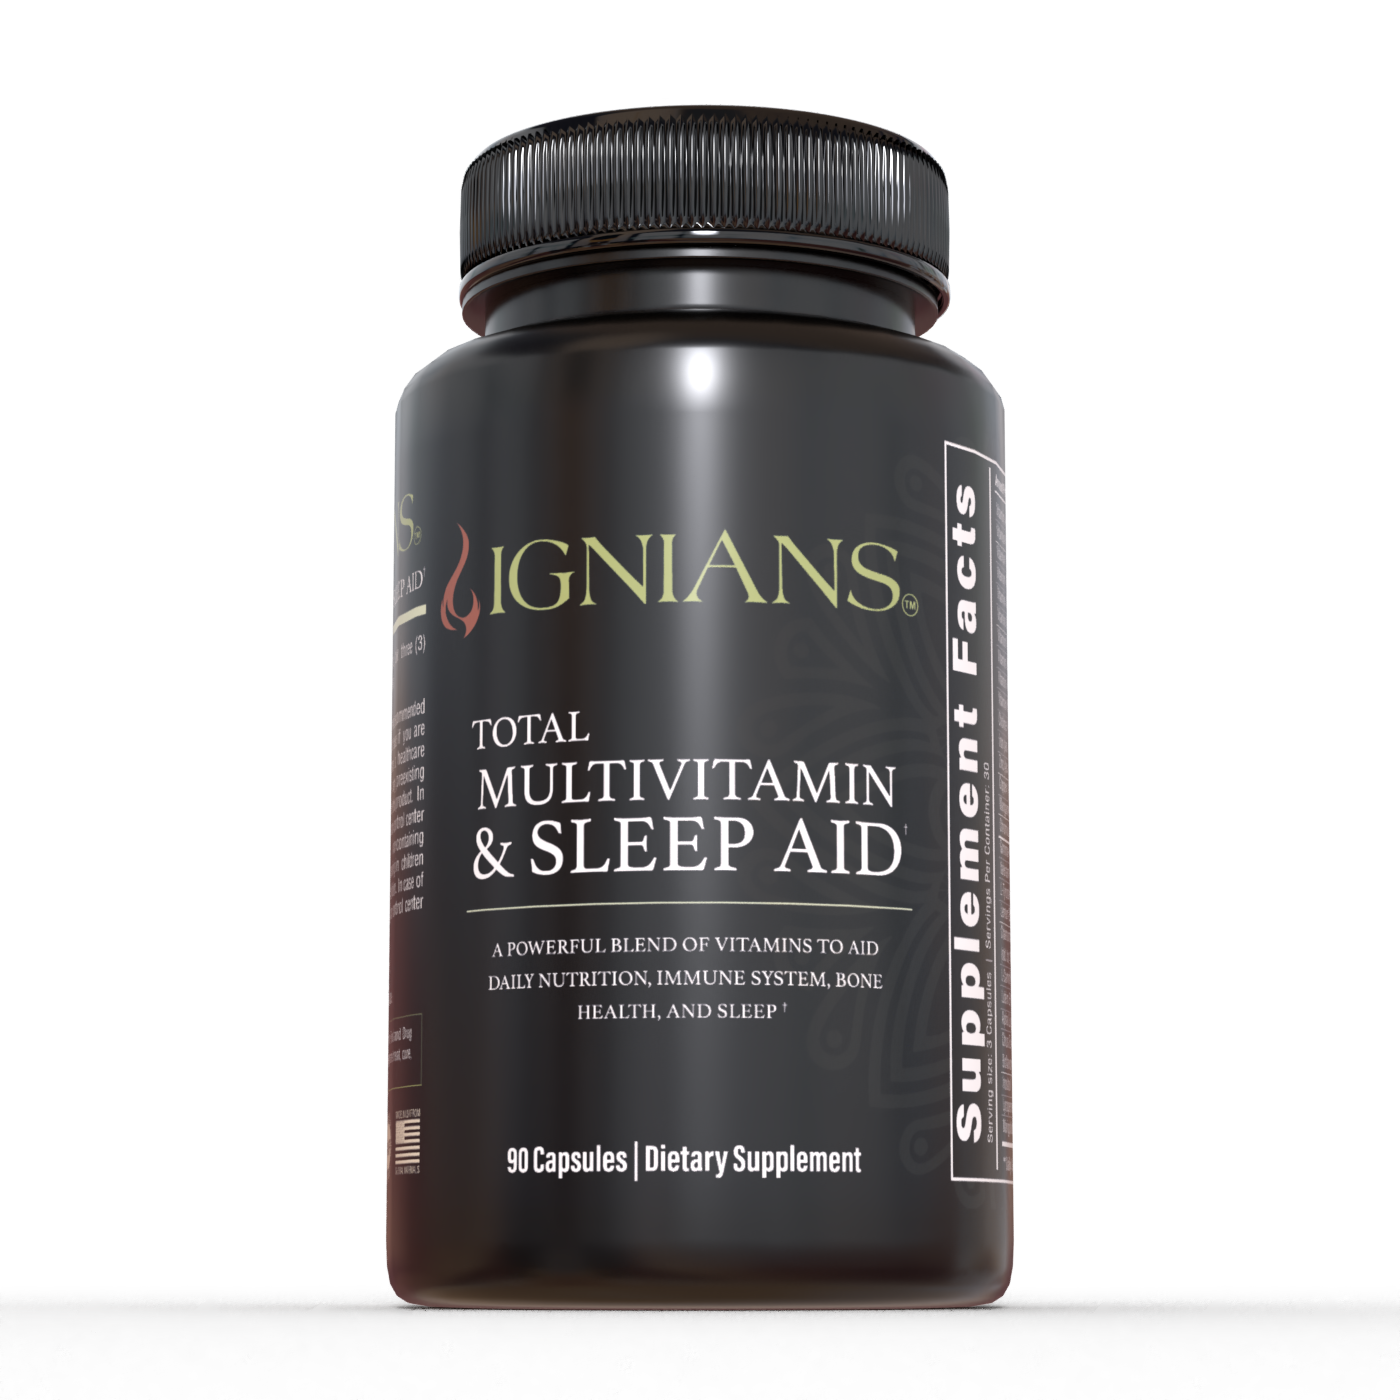 Total Multivitamin & Sleep Aid Capsules